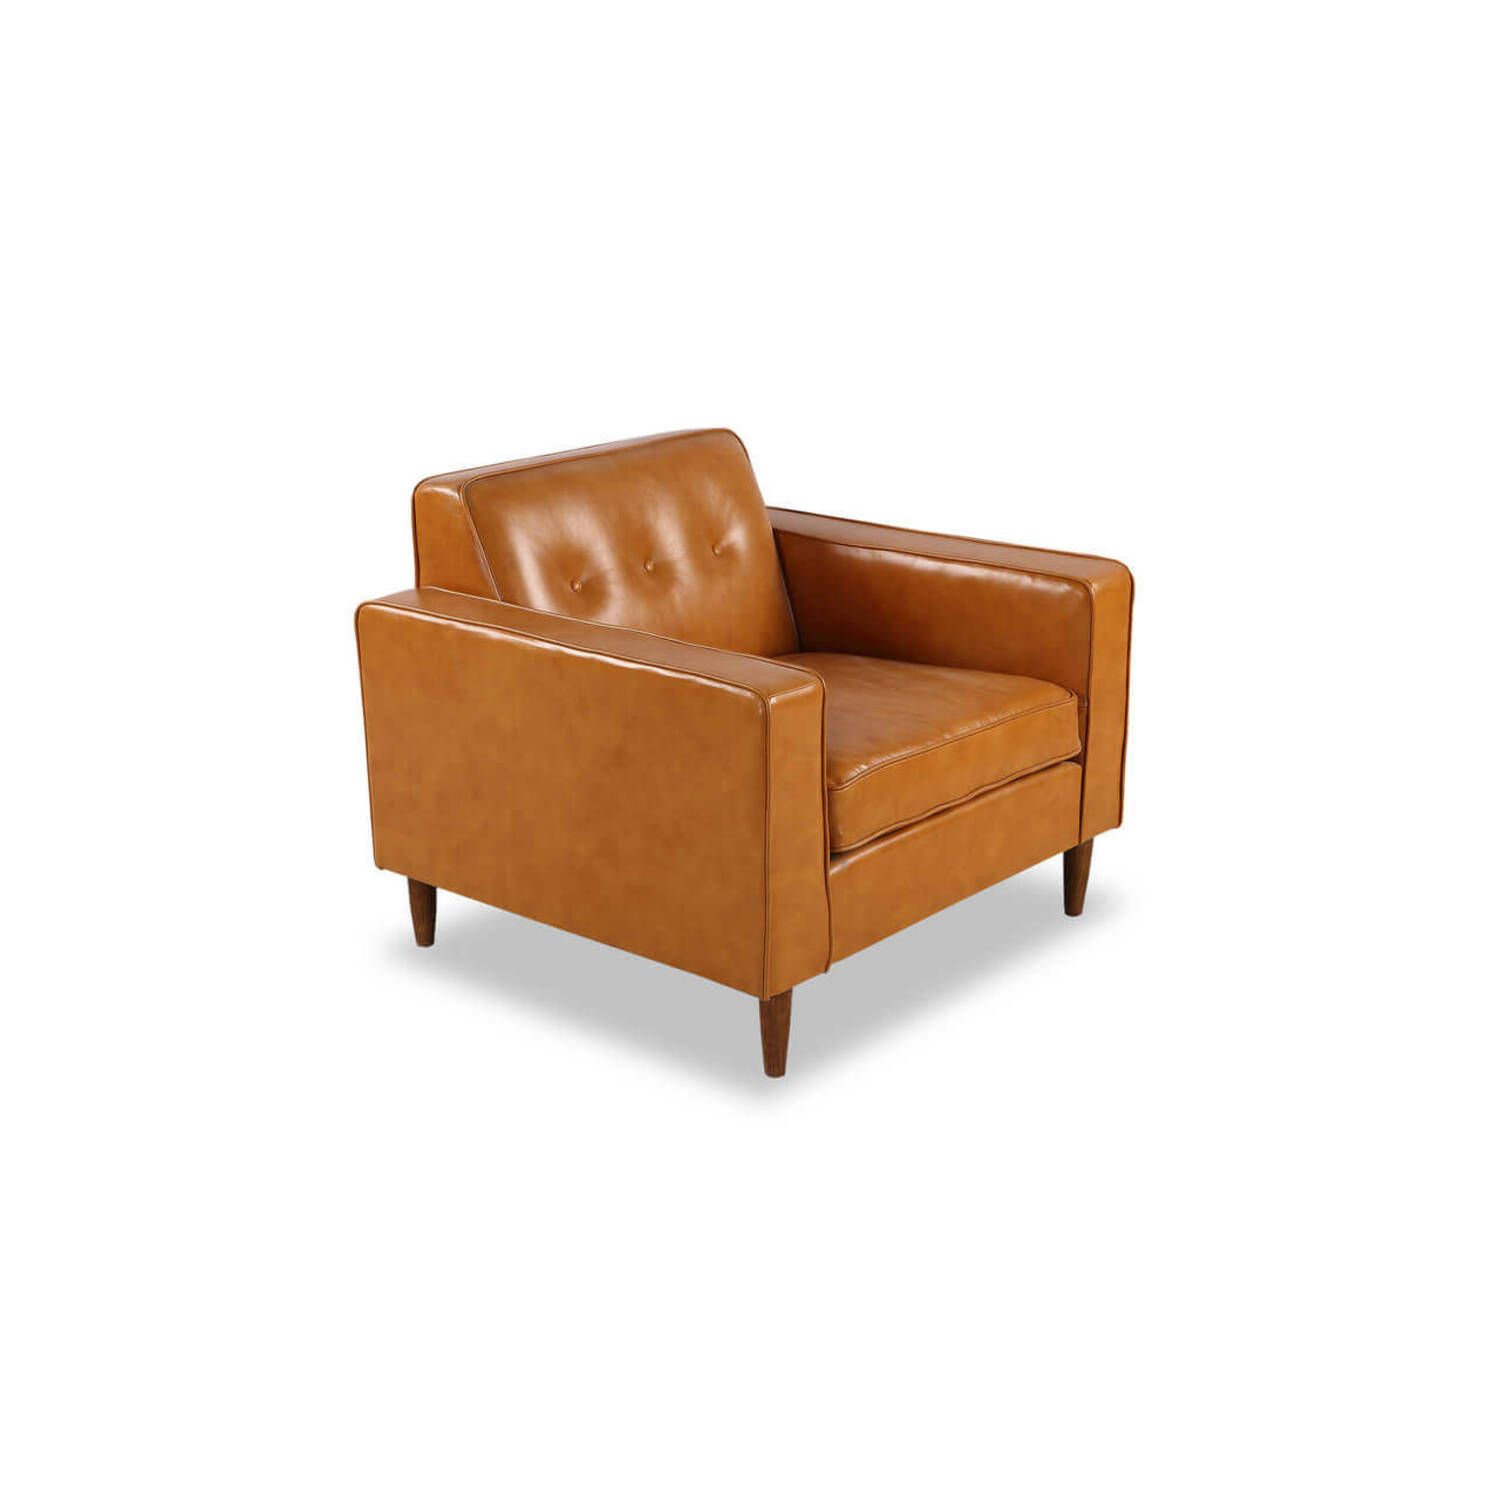 Кресло Eleanor, оранжевое кожаное